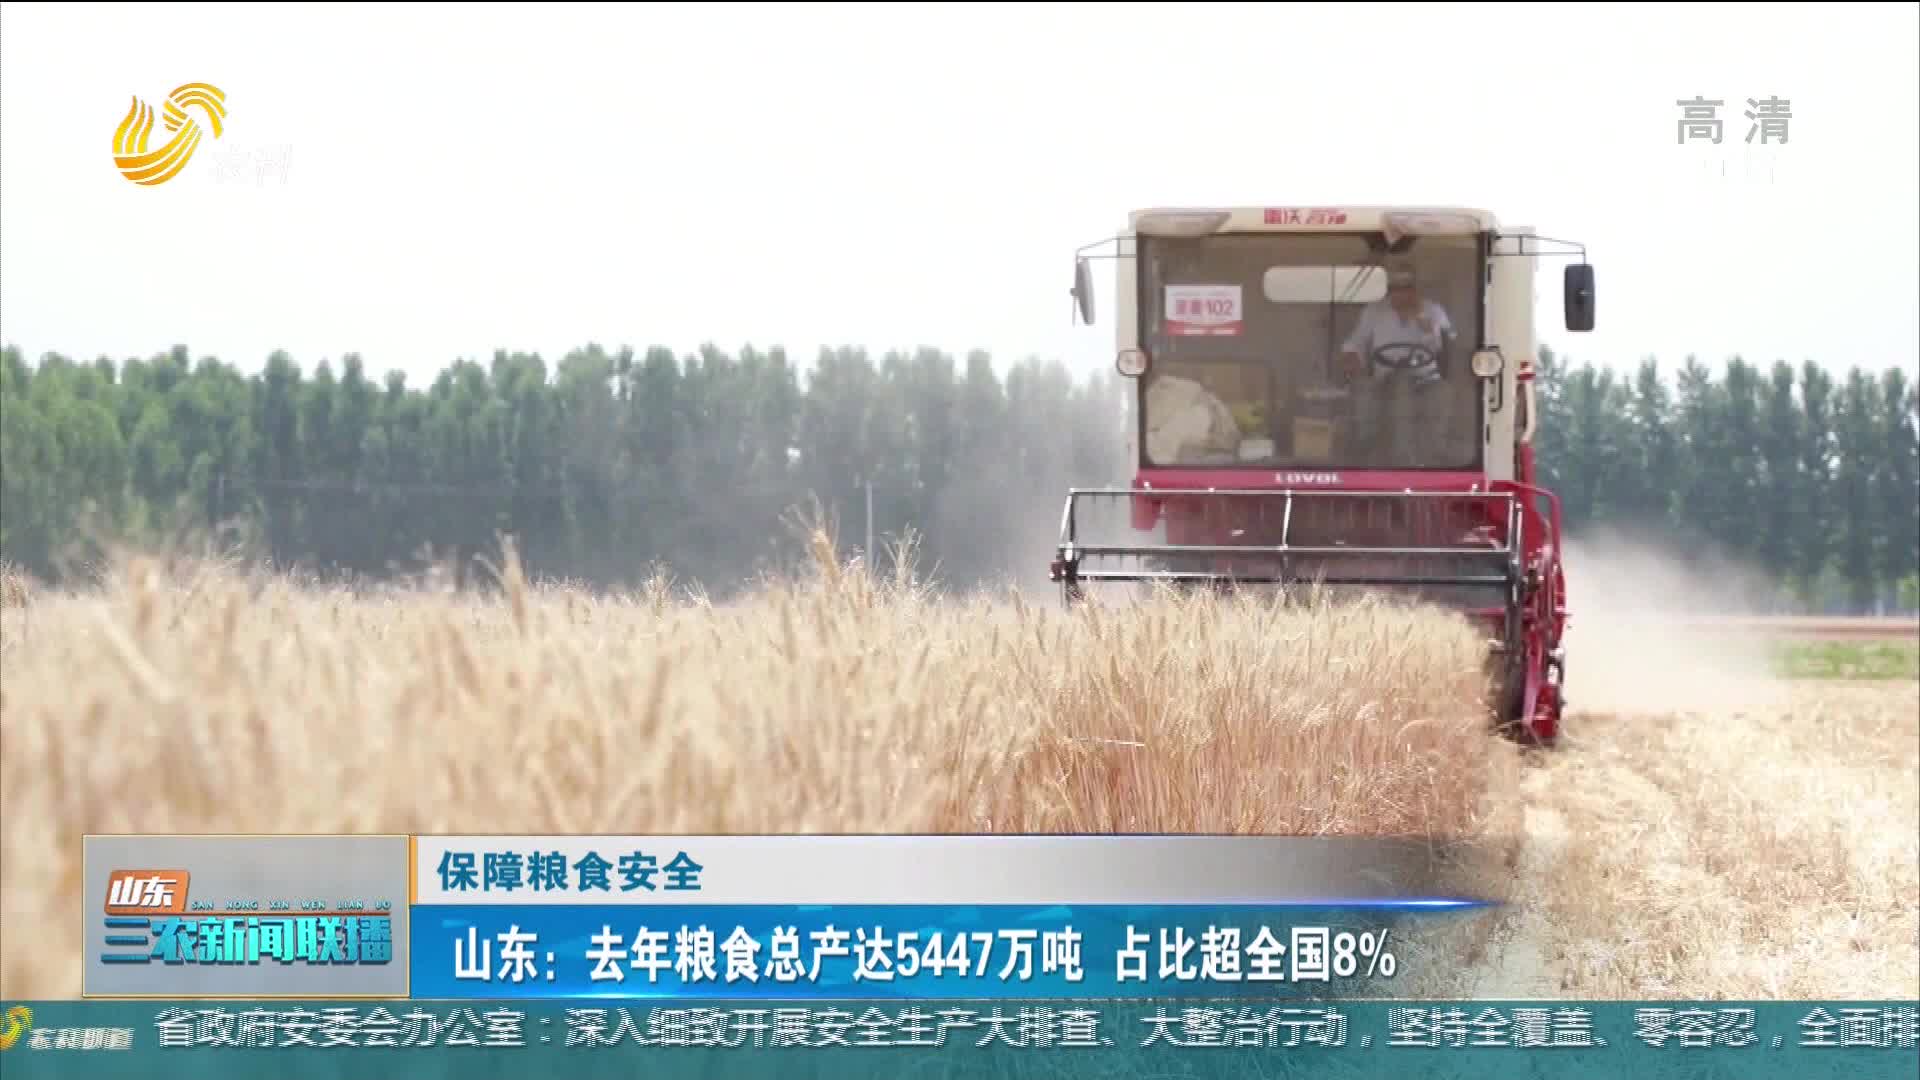 【保障粮食安全】山东：去年粮食总产达5447万吨 占比超全国8%